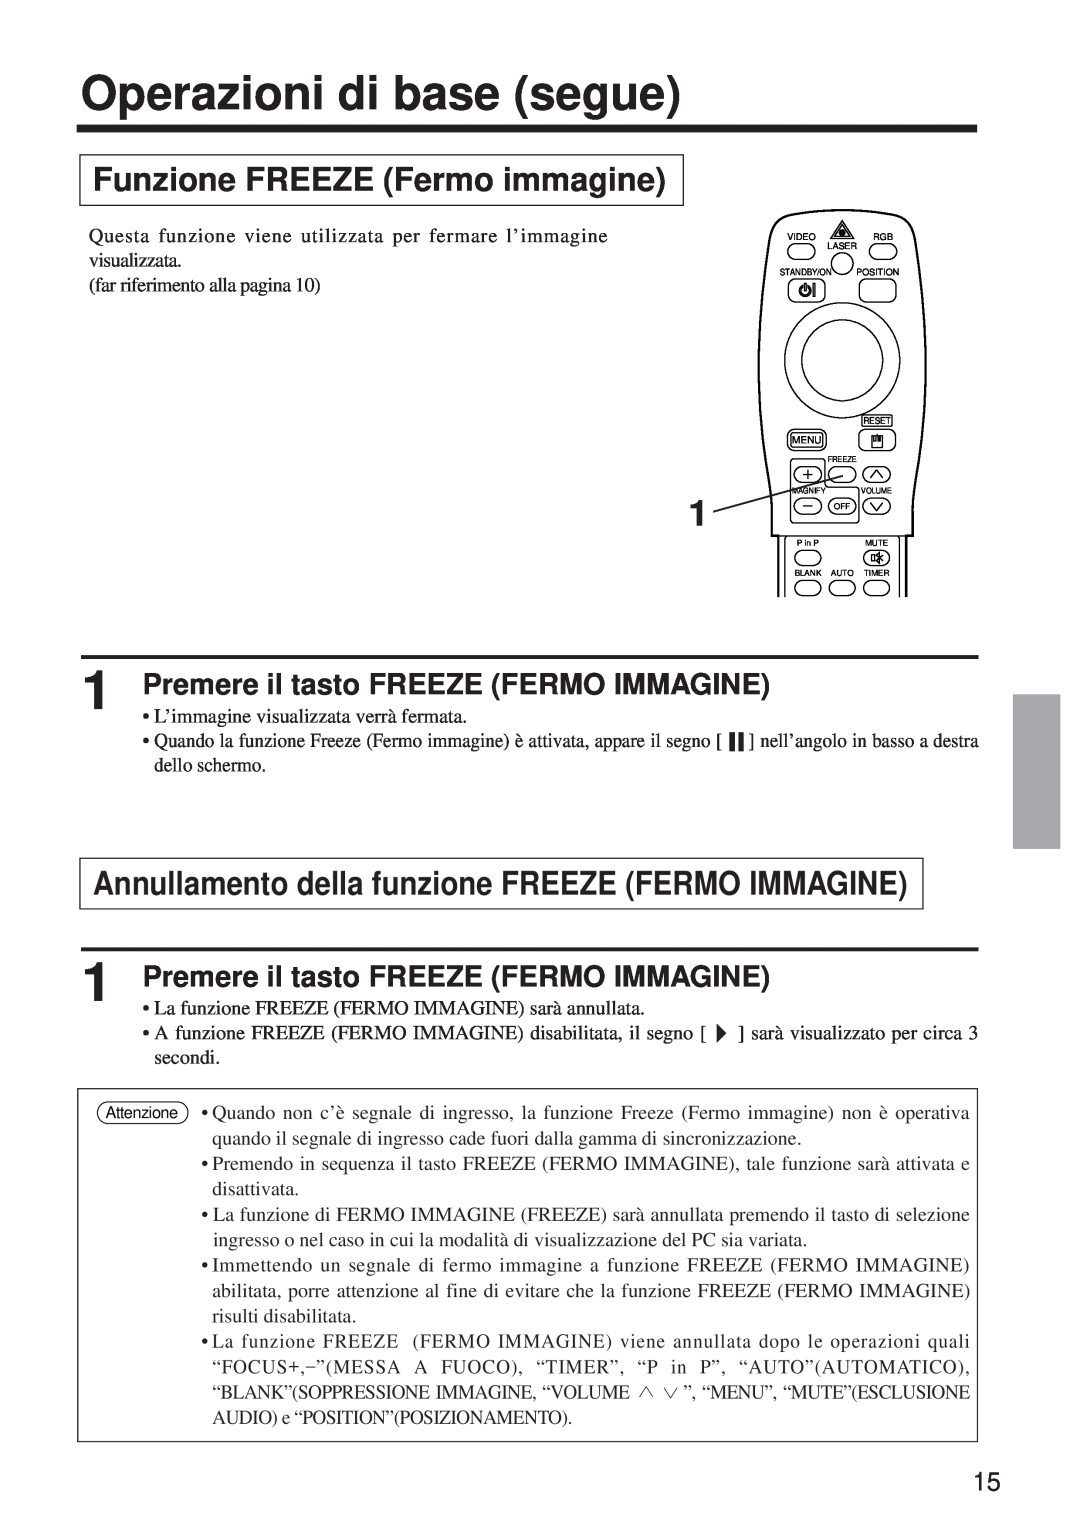 BOXLIGHT MP-650i user manual Funzione FREEZE Fermo immagine, Annullamento della funzione FREEZE FERMO IMMAGINE 